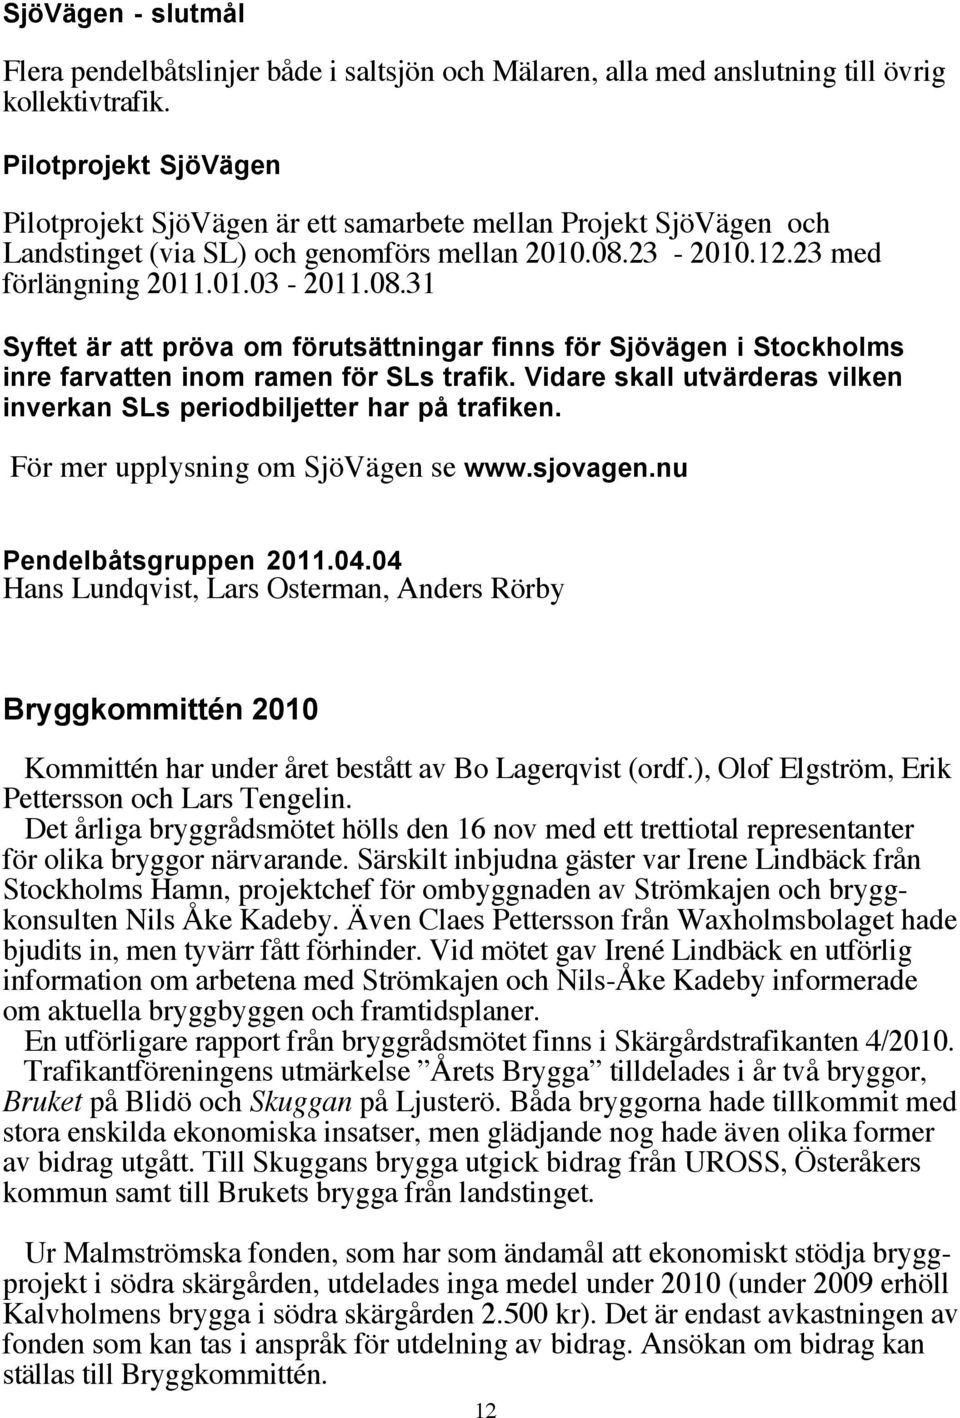 23-2010.12.23 med förlängning 2011.01.03-2011.08.31 Syftet är att pröva om förutsättningar finns för Sjövägen i Stockholms inre farvatten inom ramen för SLs trafik.